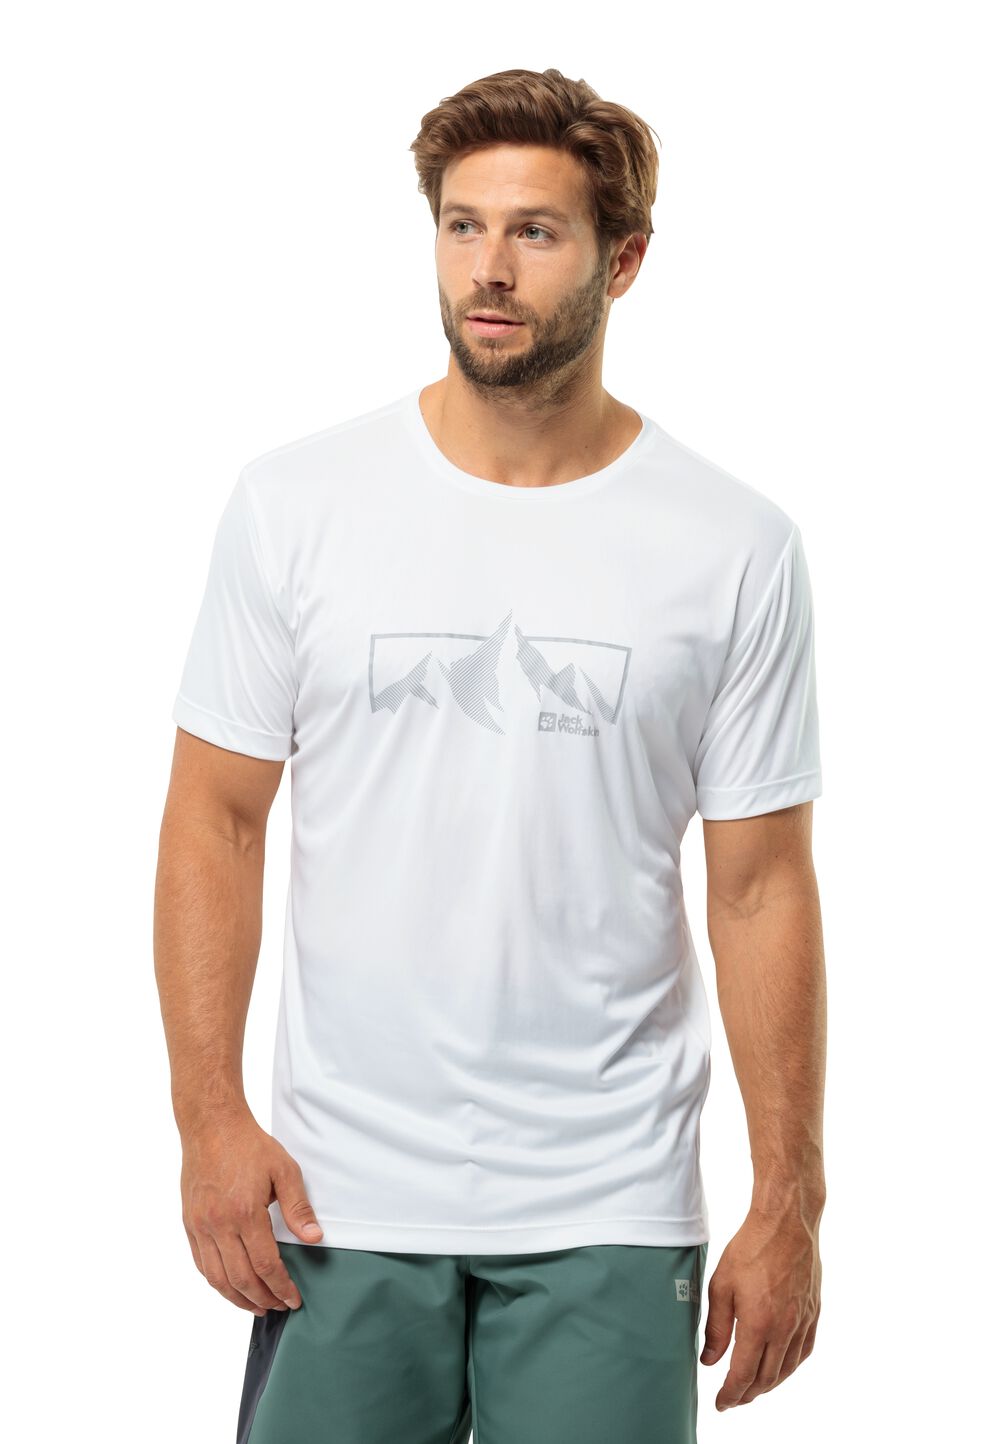 Jack Wolfskin Peak Graphic T-Shirt Men Functioneel shirt Heren XL wit stark white